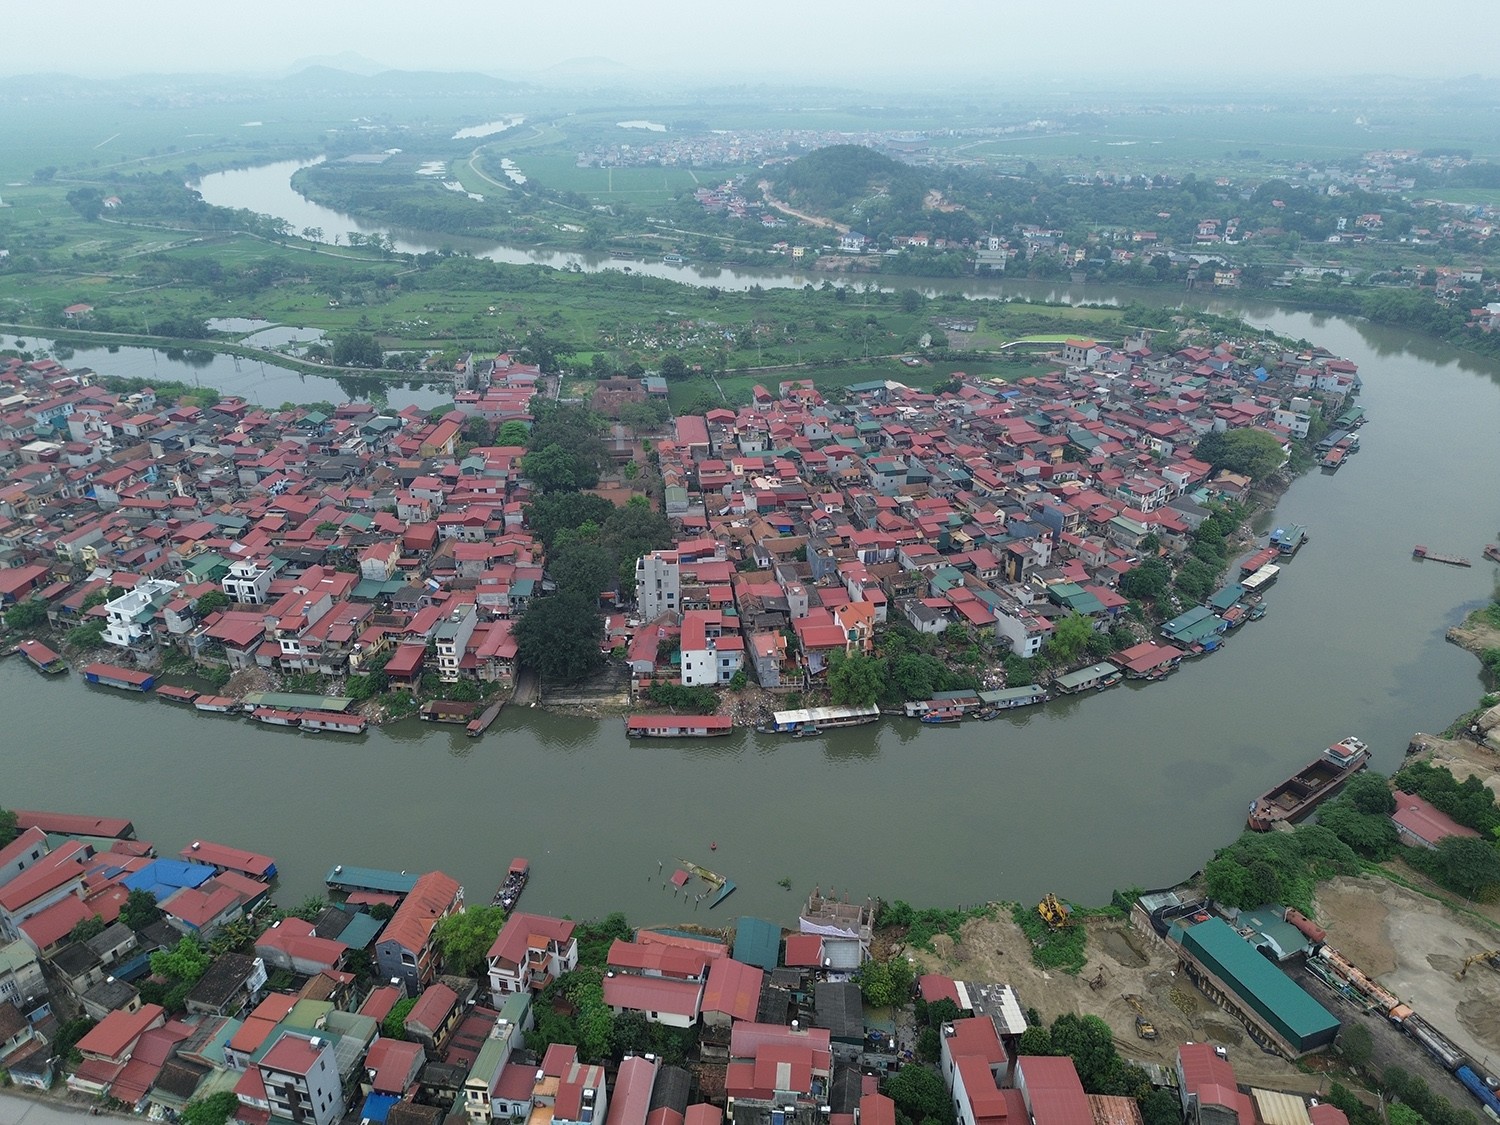 Đầu tháng 3, một ngôi nhà 2 tầng của người dân ở phường Vạn An (TP Bắc Ninh, tỉnh Bắc Ninh) bị sạt lở xuống sông Cầu. Một tháng sau, thêm 5 ngôi nhà và 2 công trình xây dựng tại khu vực này tiếp tục bị sạt lở.